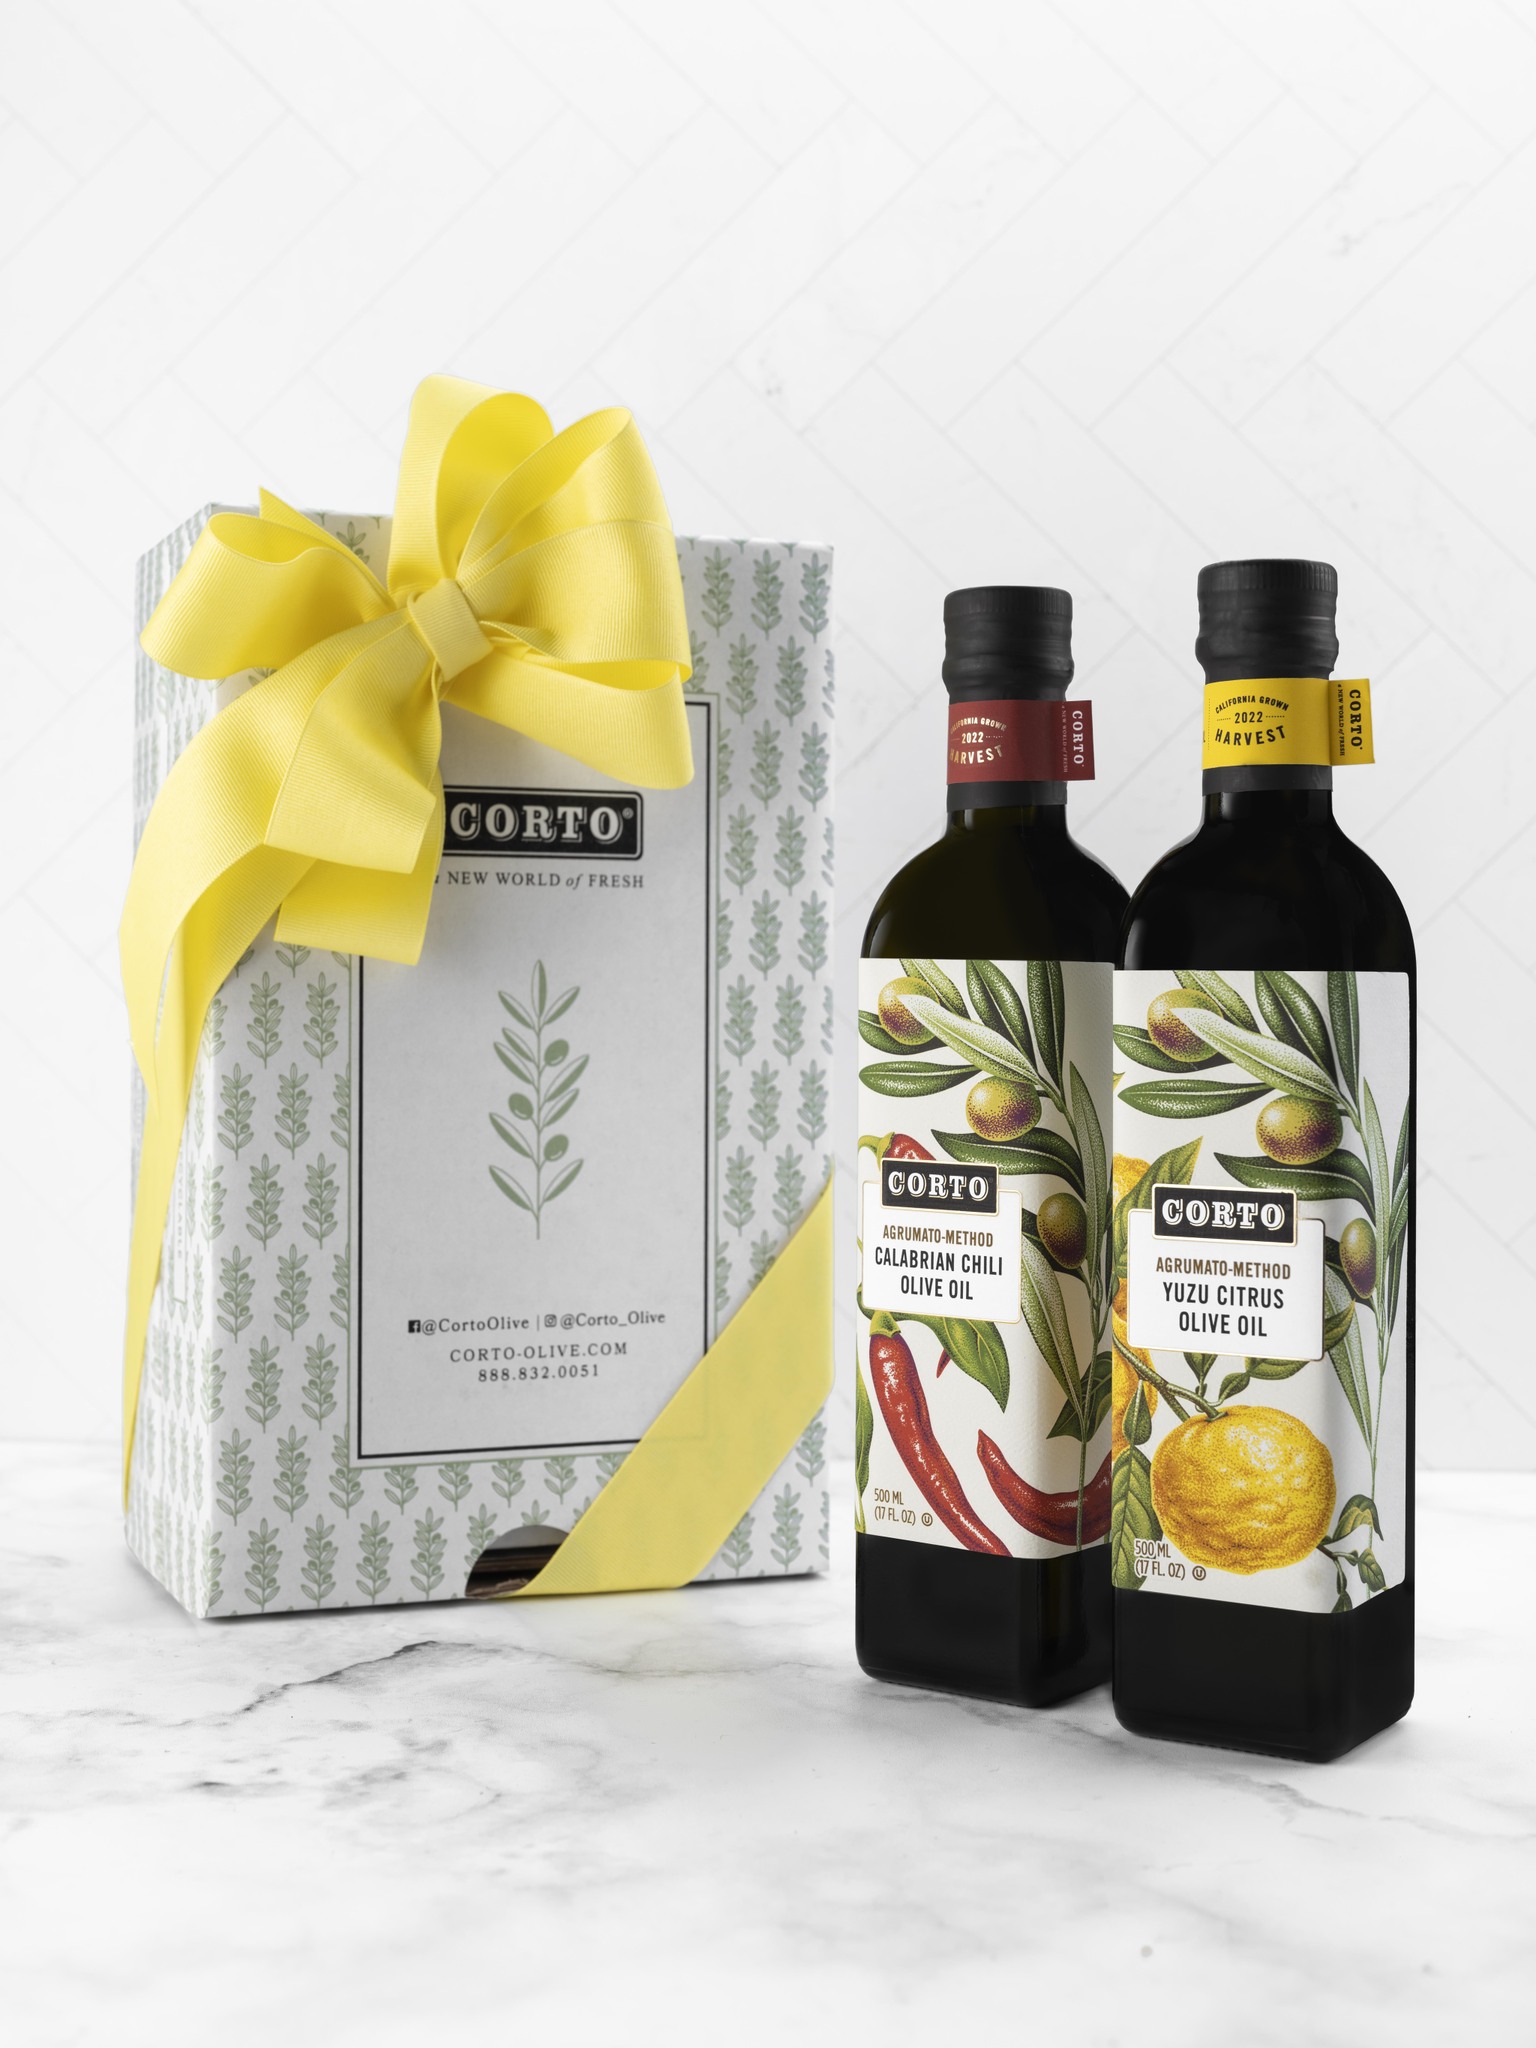 Corto Yuzu Citrus + Calabrian Chili Olive Oil Box Set 